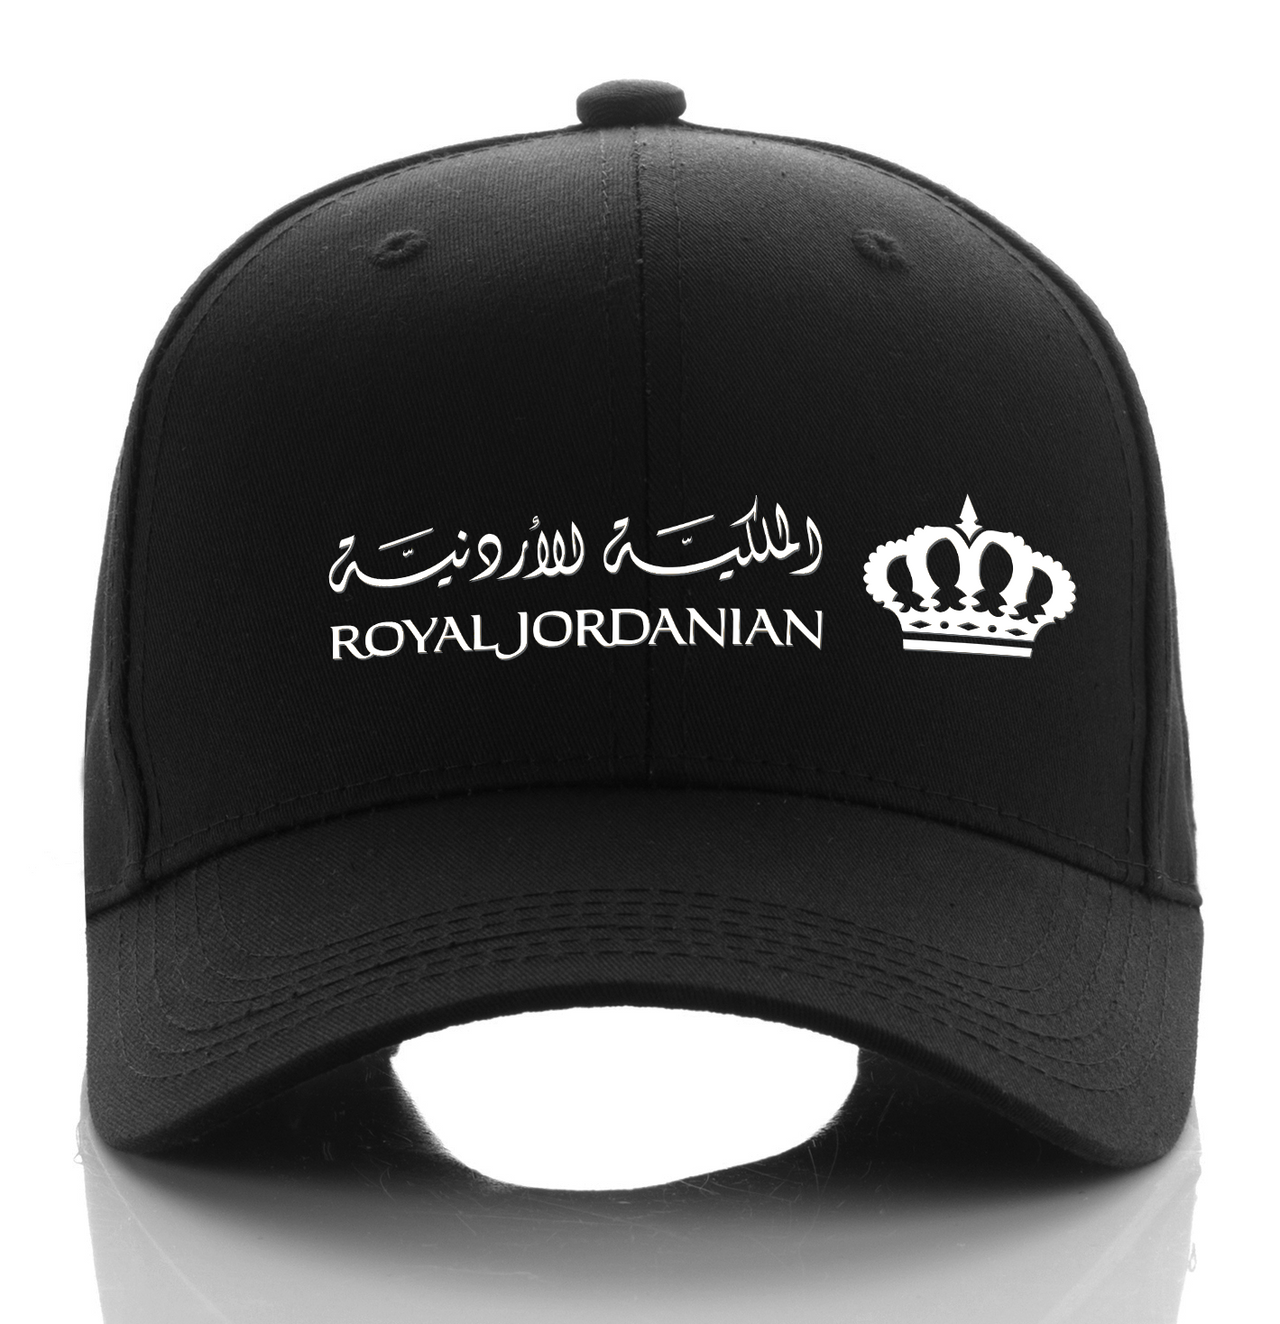 ROYAL JORDANIAN AIRLINE DESIGNED CAP